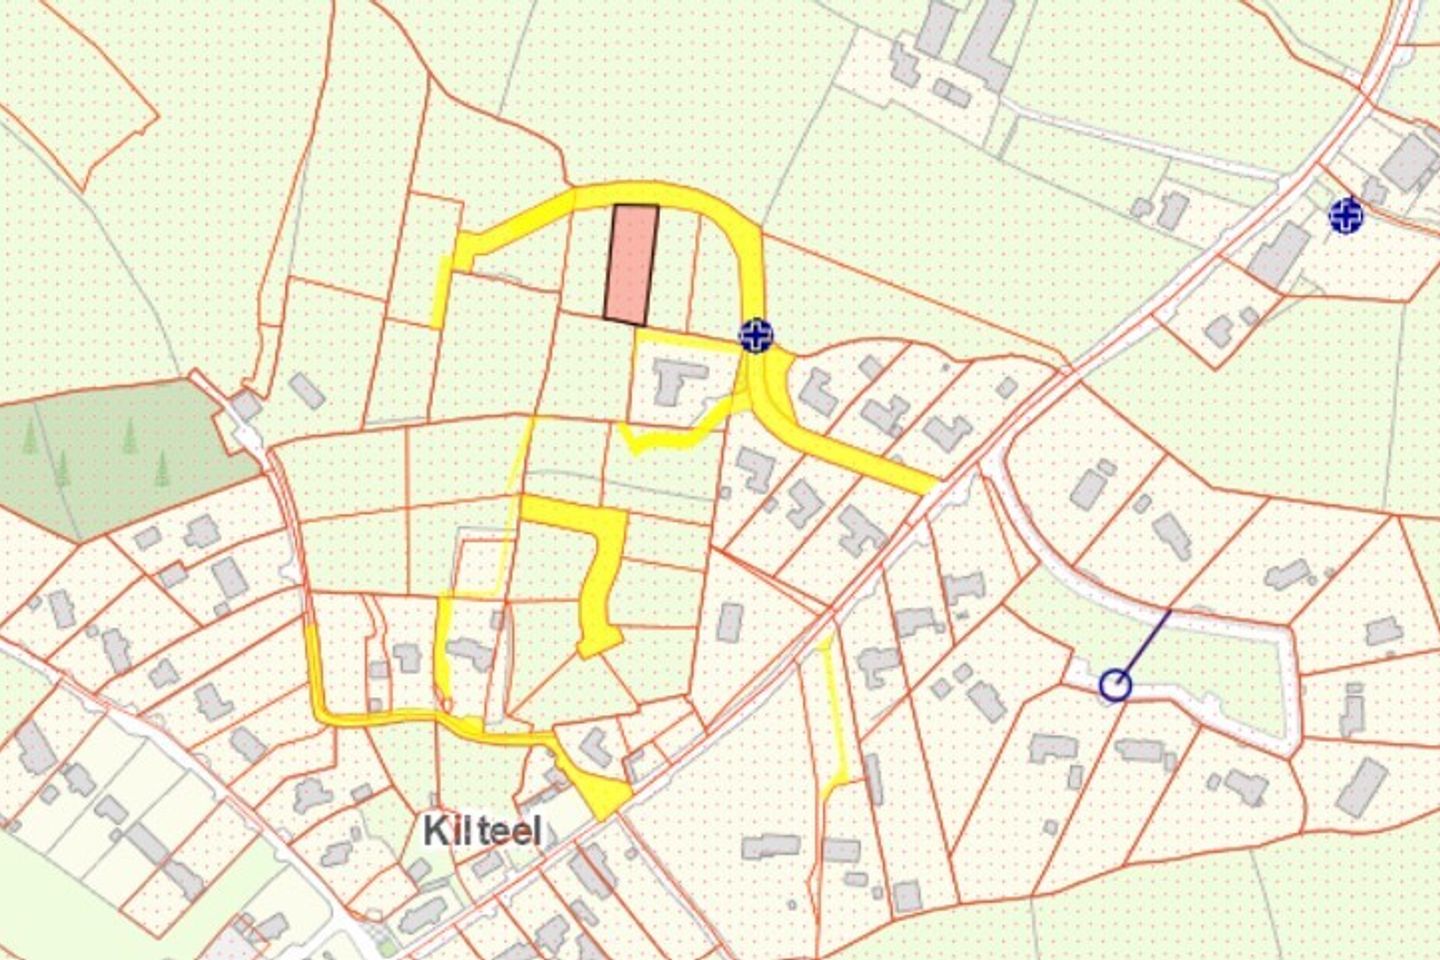 Residential Site, Blackdown, Kilteel, Co. Kildare